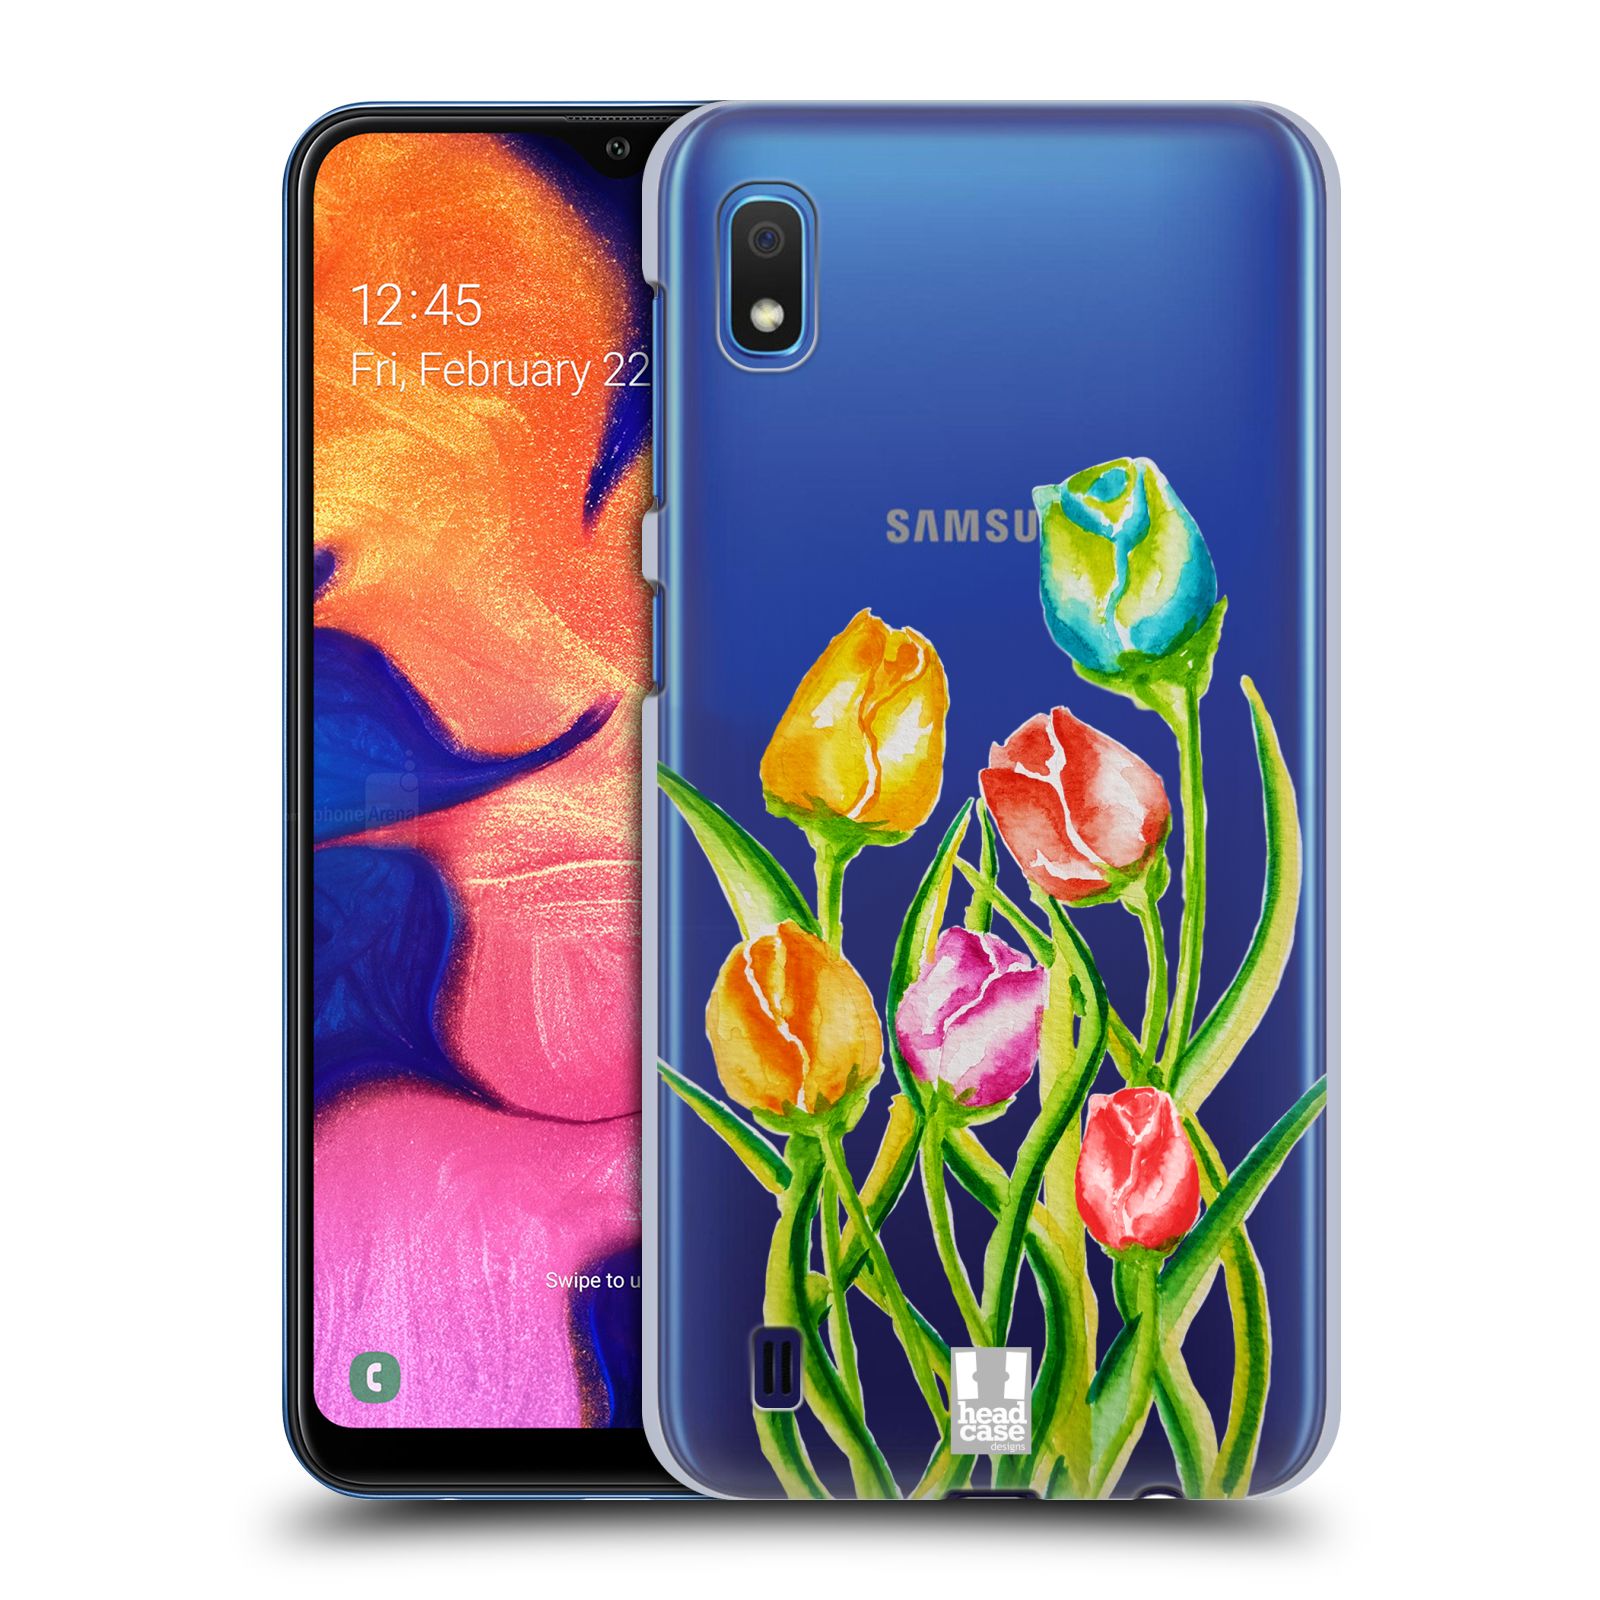 Pouzdro na mobil Samsung Galaxy A10 - HEAD CASE - Květina Tulipán vodní barvy